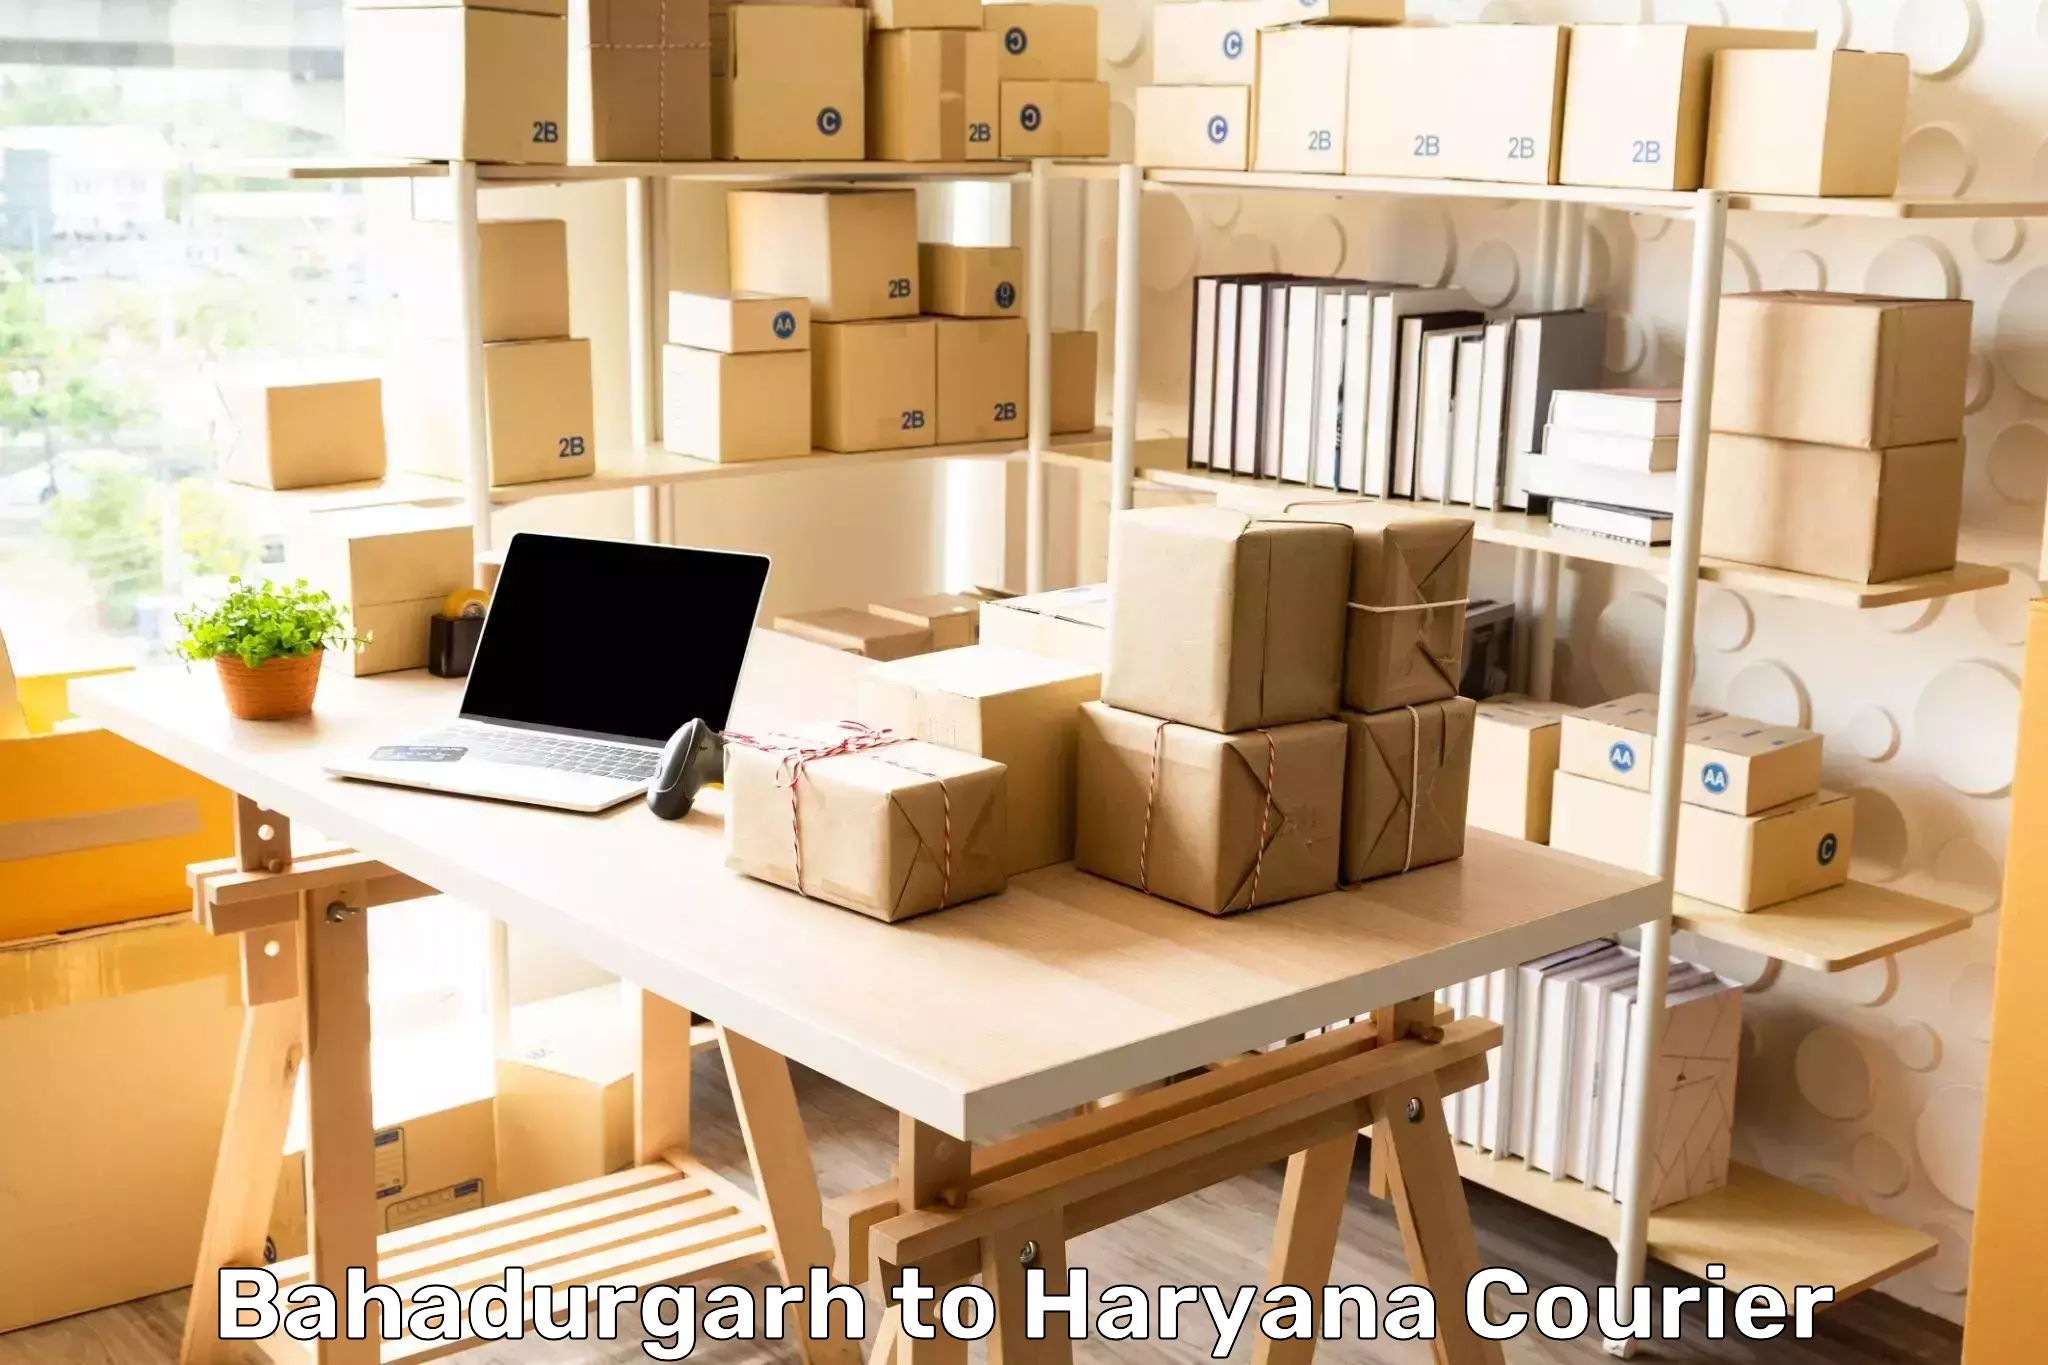 Logistics and distribution Bahadurgarh to NCR Haryana